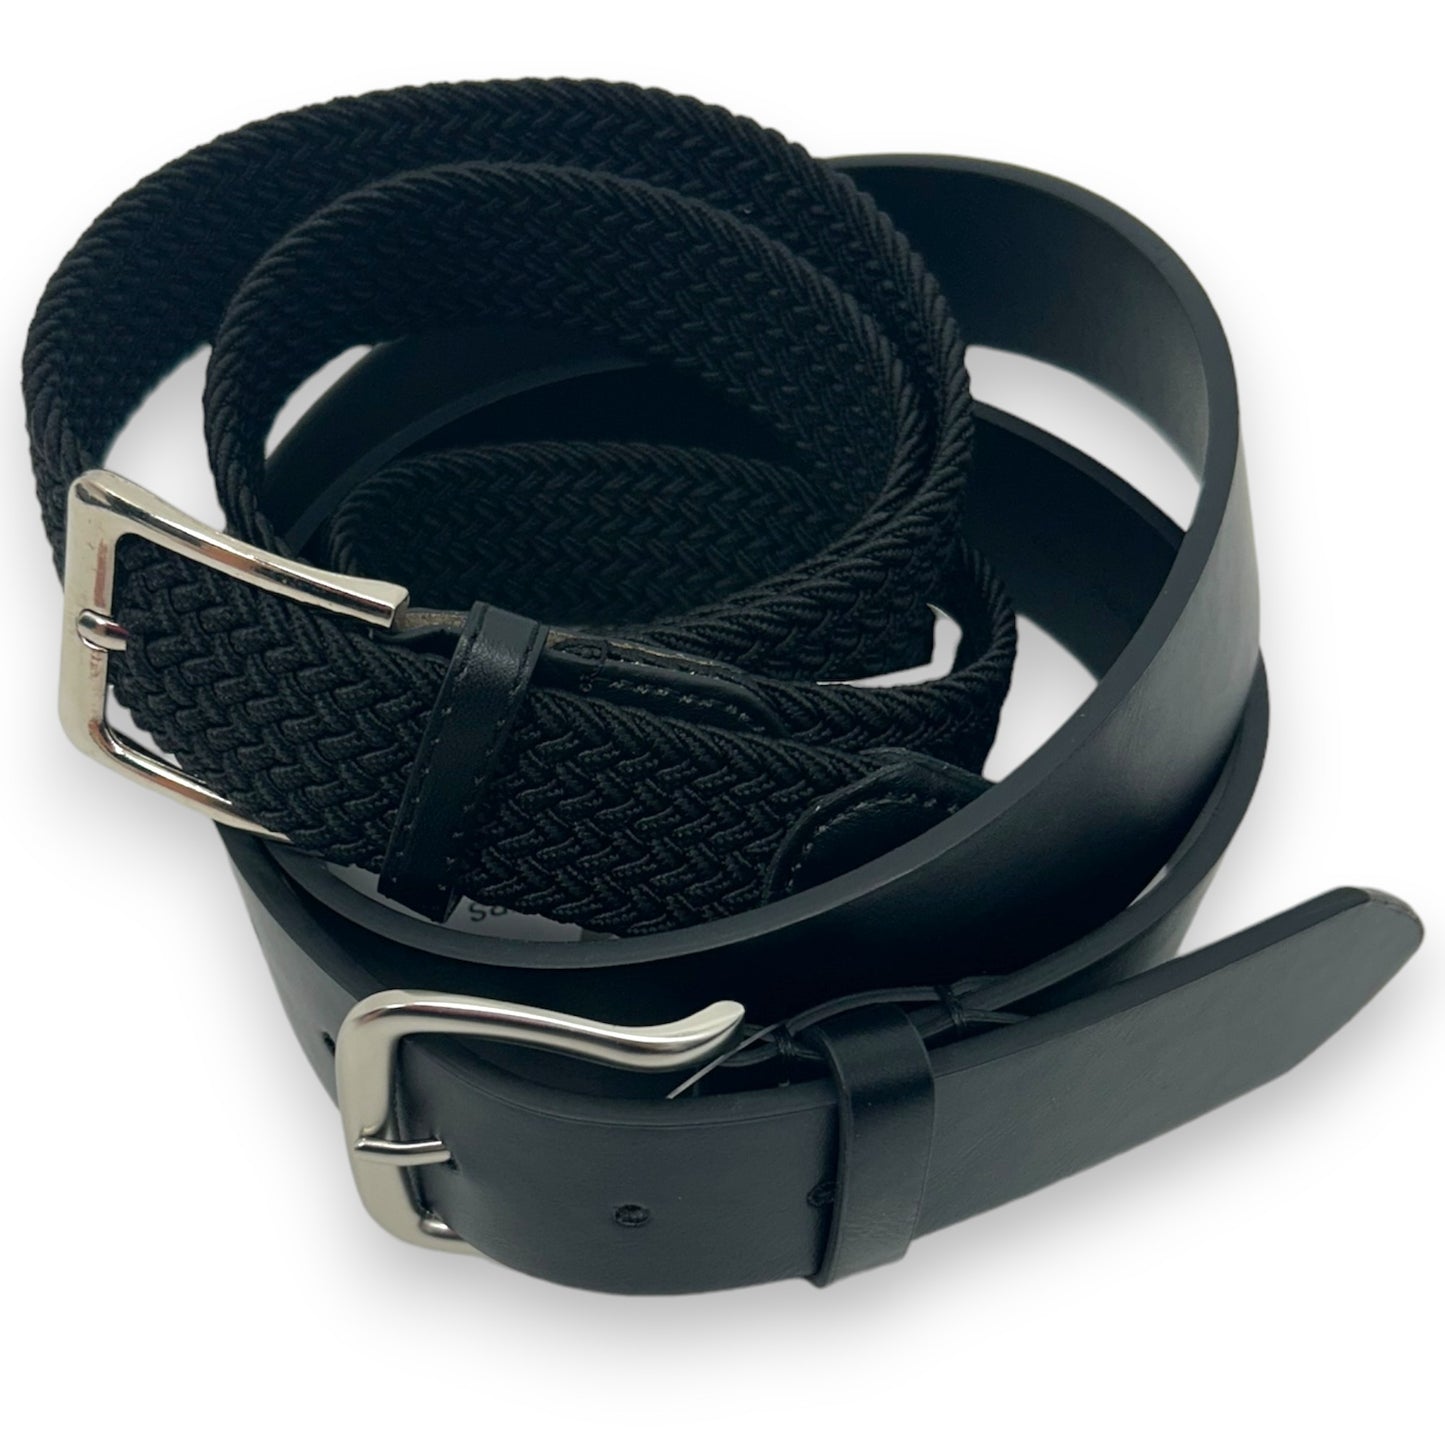 Riemen 2 pack - 2stuks - elastiek zwart - zwart vegan leather - Safekeepers